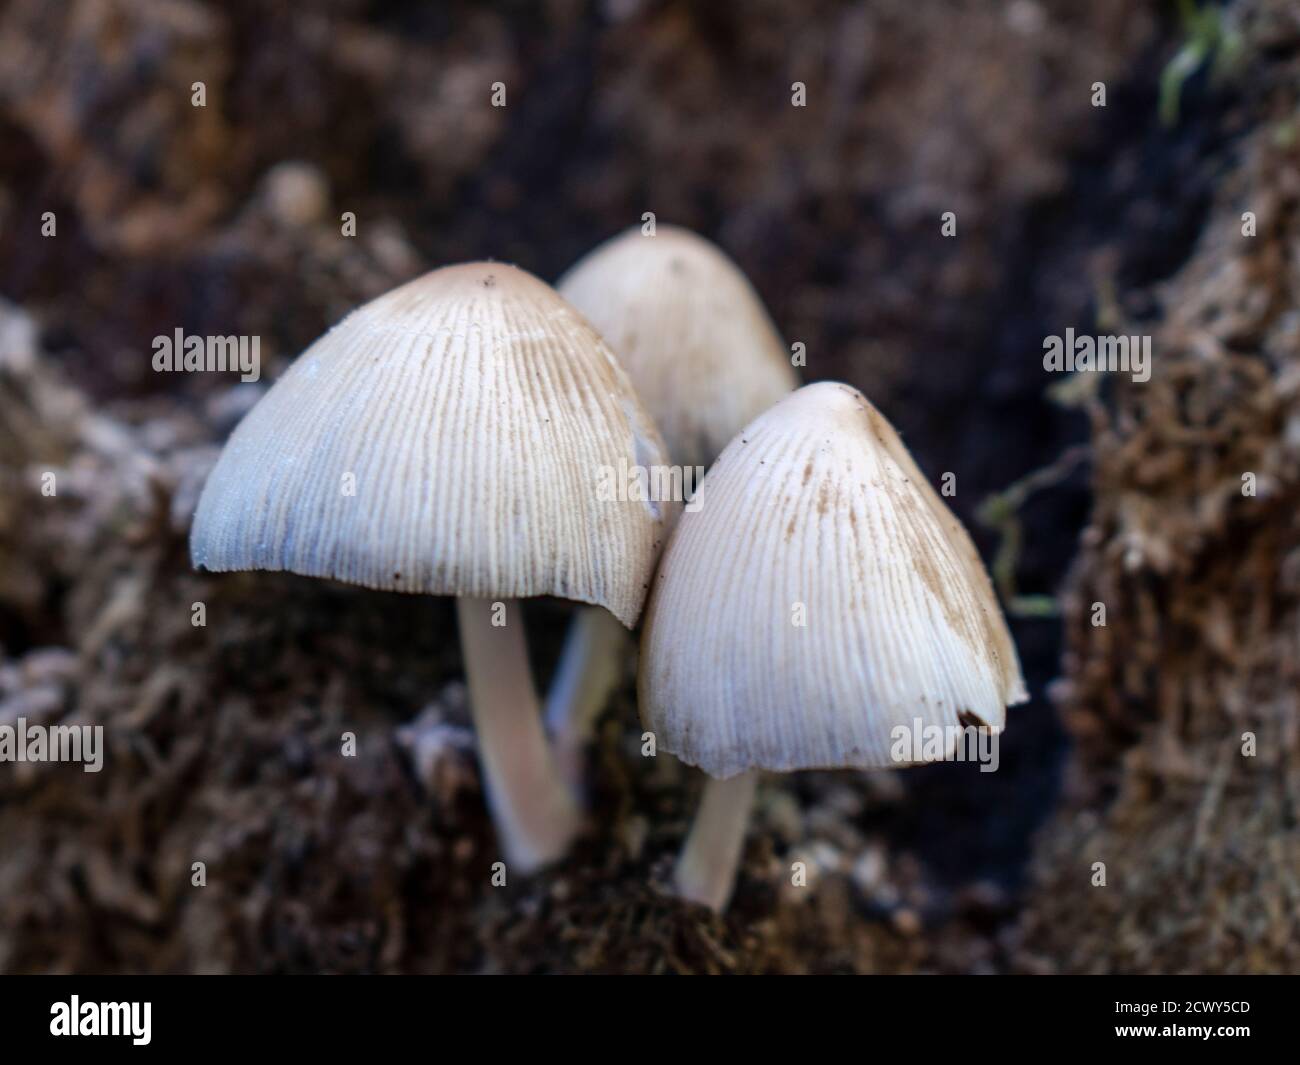 Coprinellus domesticus mushrooms Stock Photo